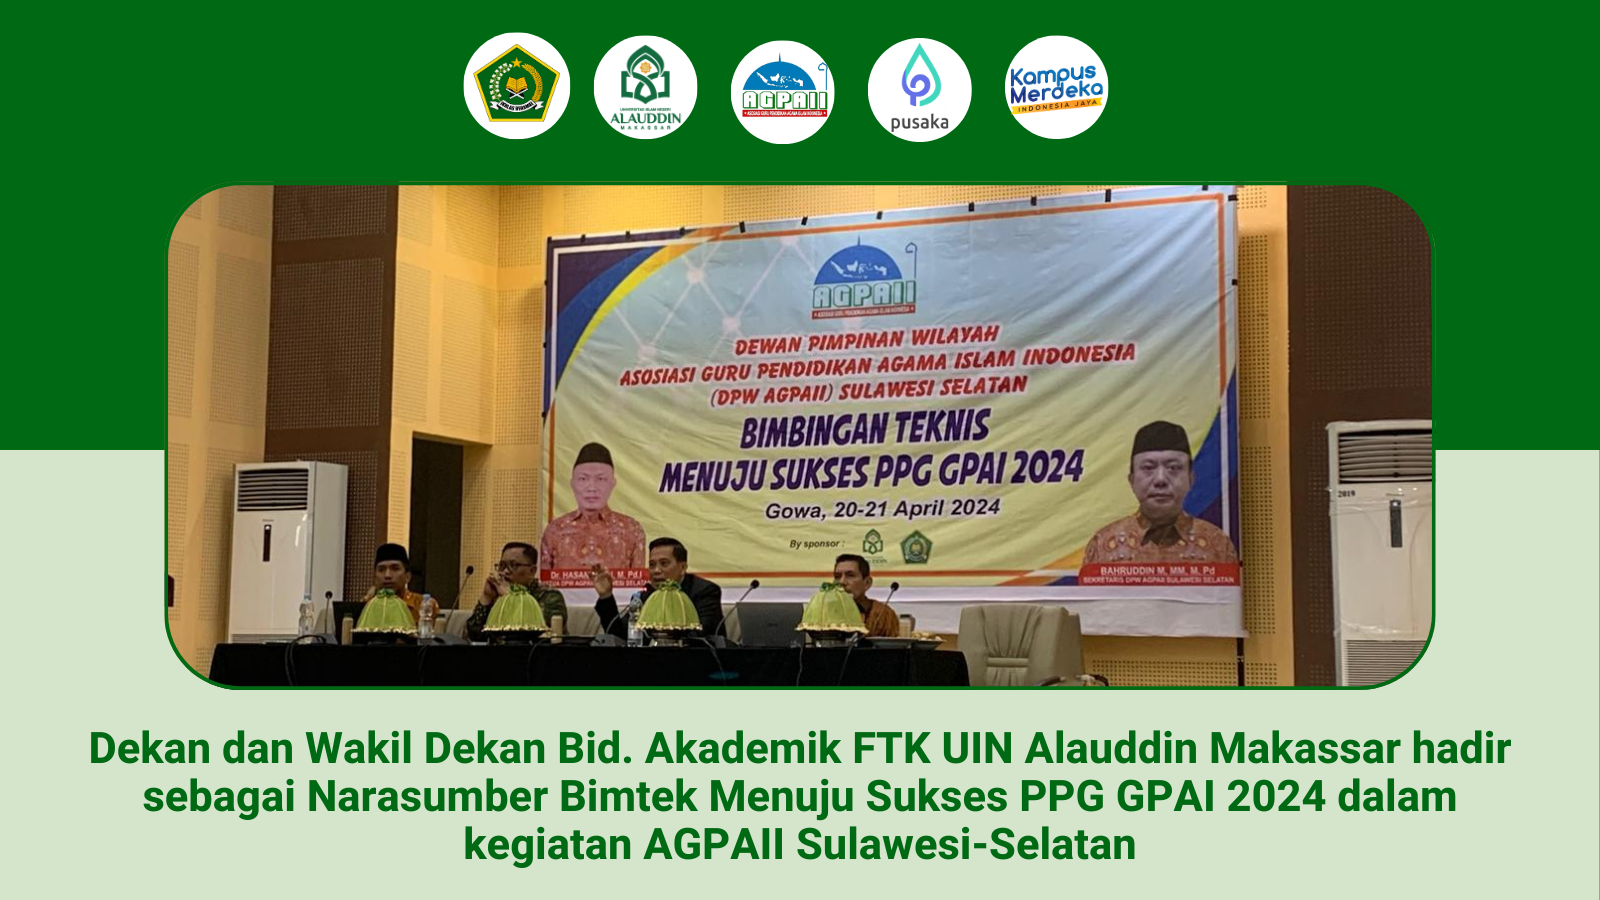 Dekan dan Wakil Dekan Bid. Akademik FTK UIN Alauddin Makassar hadir sebagai Narasumber Bimtek Menuju Sukses PPG GPAI 2024